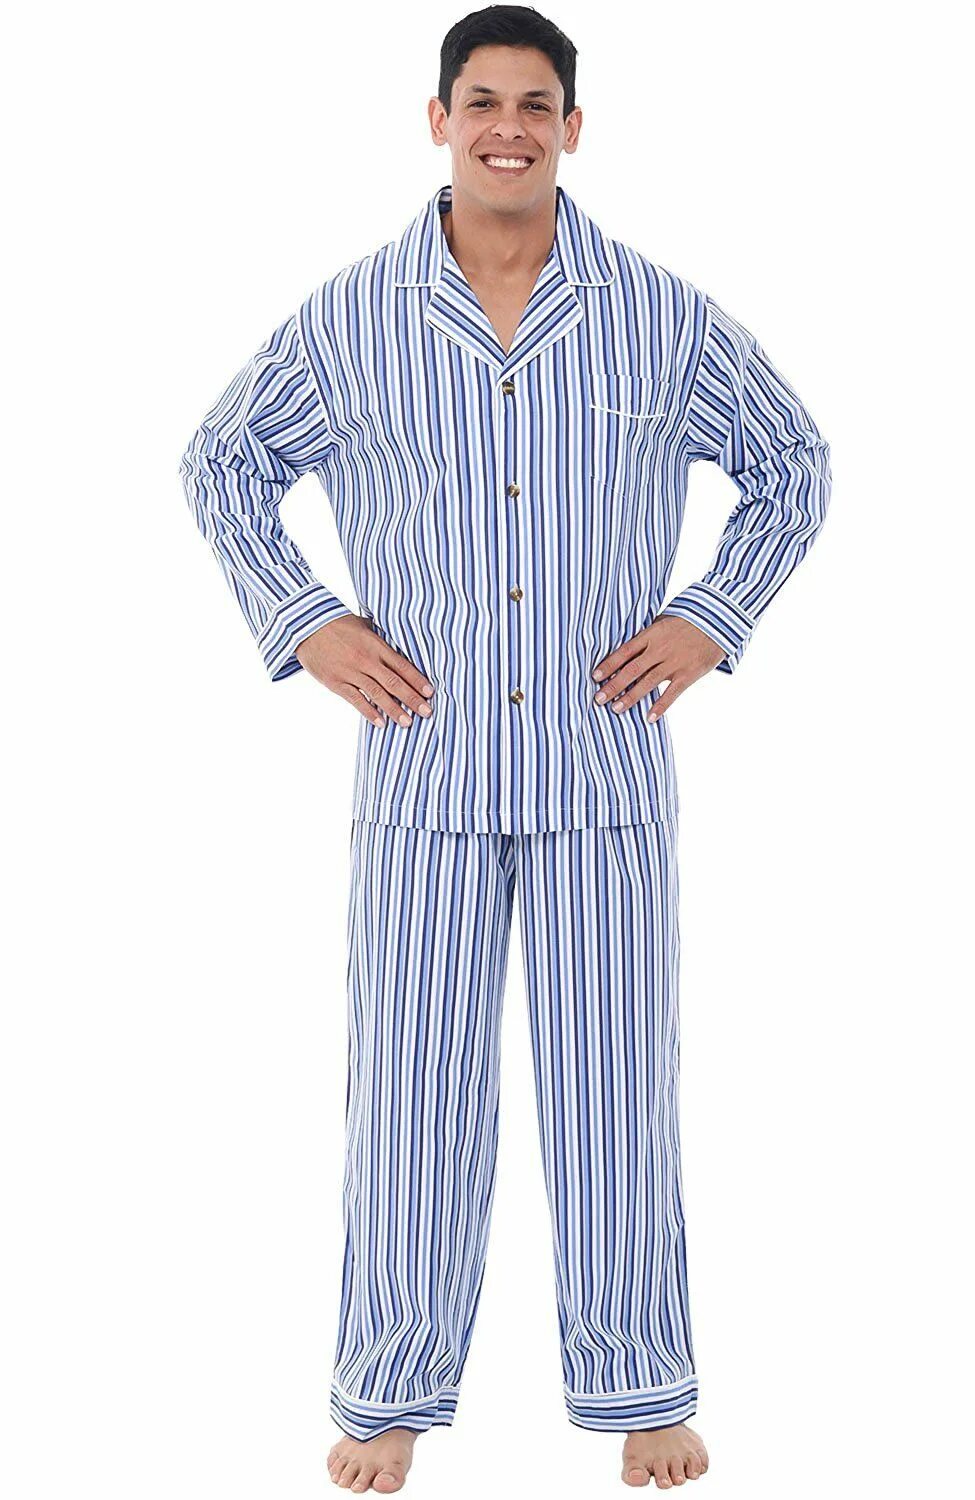 Alexander del Rossa пижама. Пижама армейская Госпитальная. Полосатая пижама мужская. Пижама в полоску. Пижамы россия